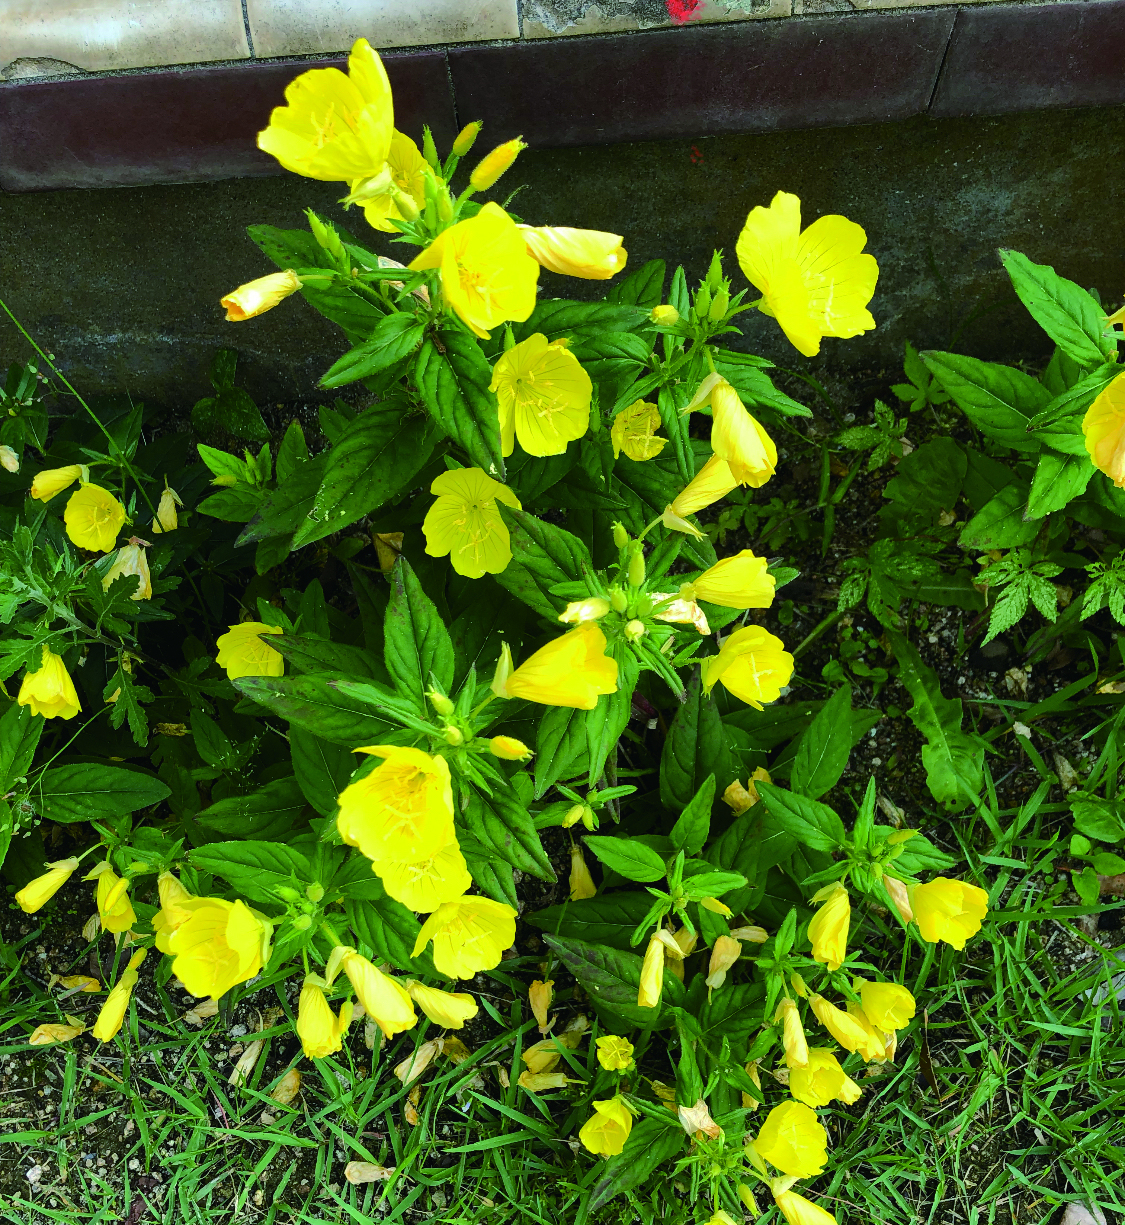 노란색 달맞이꽃은 요즘이 제철이다. 논두렁이든 어디든 쉽게 찾을 수 있다. 그런데 토종이 아니라 해방즈음에 들어온 귀화식물이다.